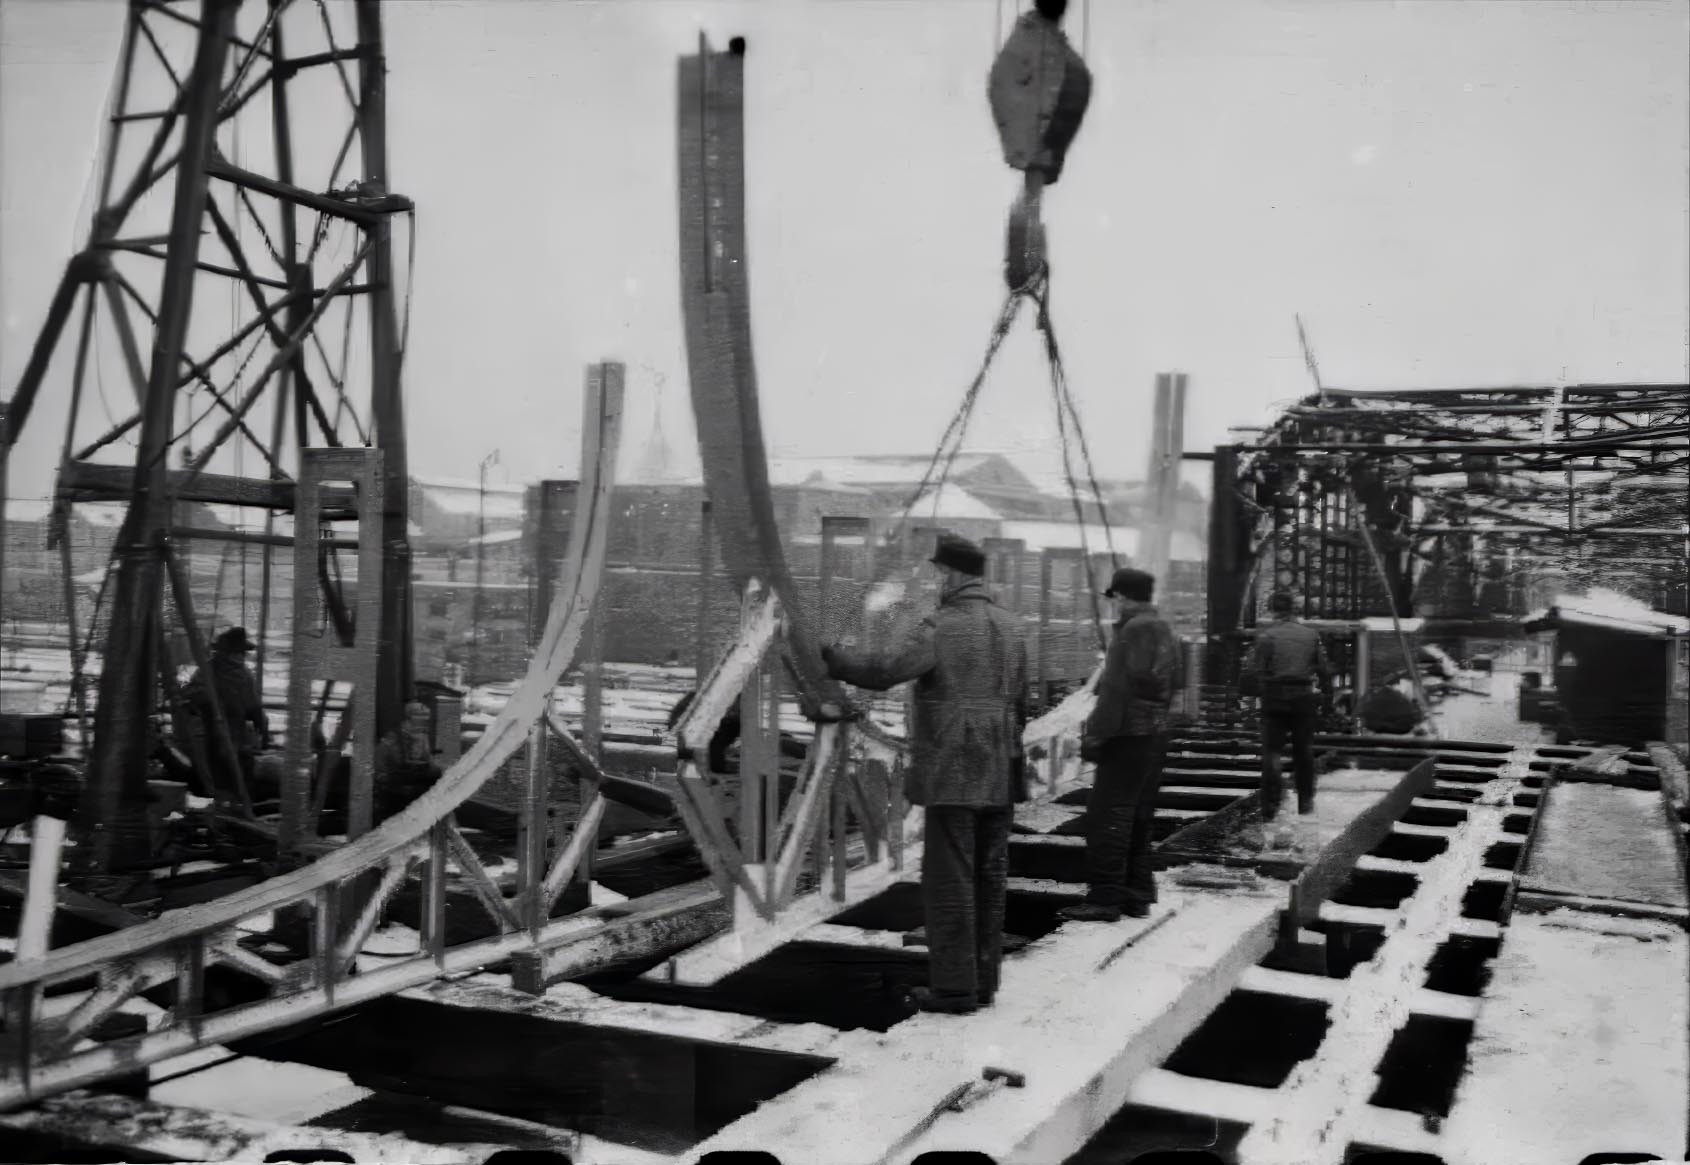 Vom Oktober 1952 gingen die Bauarbeiten zur Wiederherstellung der Hackerbrücke durch den ganzen Winter, was ab und zu Einschränkungen durch Eis und Schnee ergab. Dennoch wurde sie im Zeitplan fertiggestellt und für 12 t Belastung freigegeben.